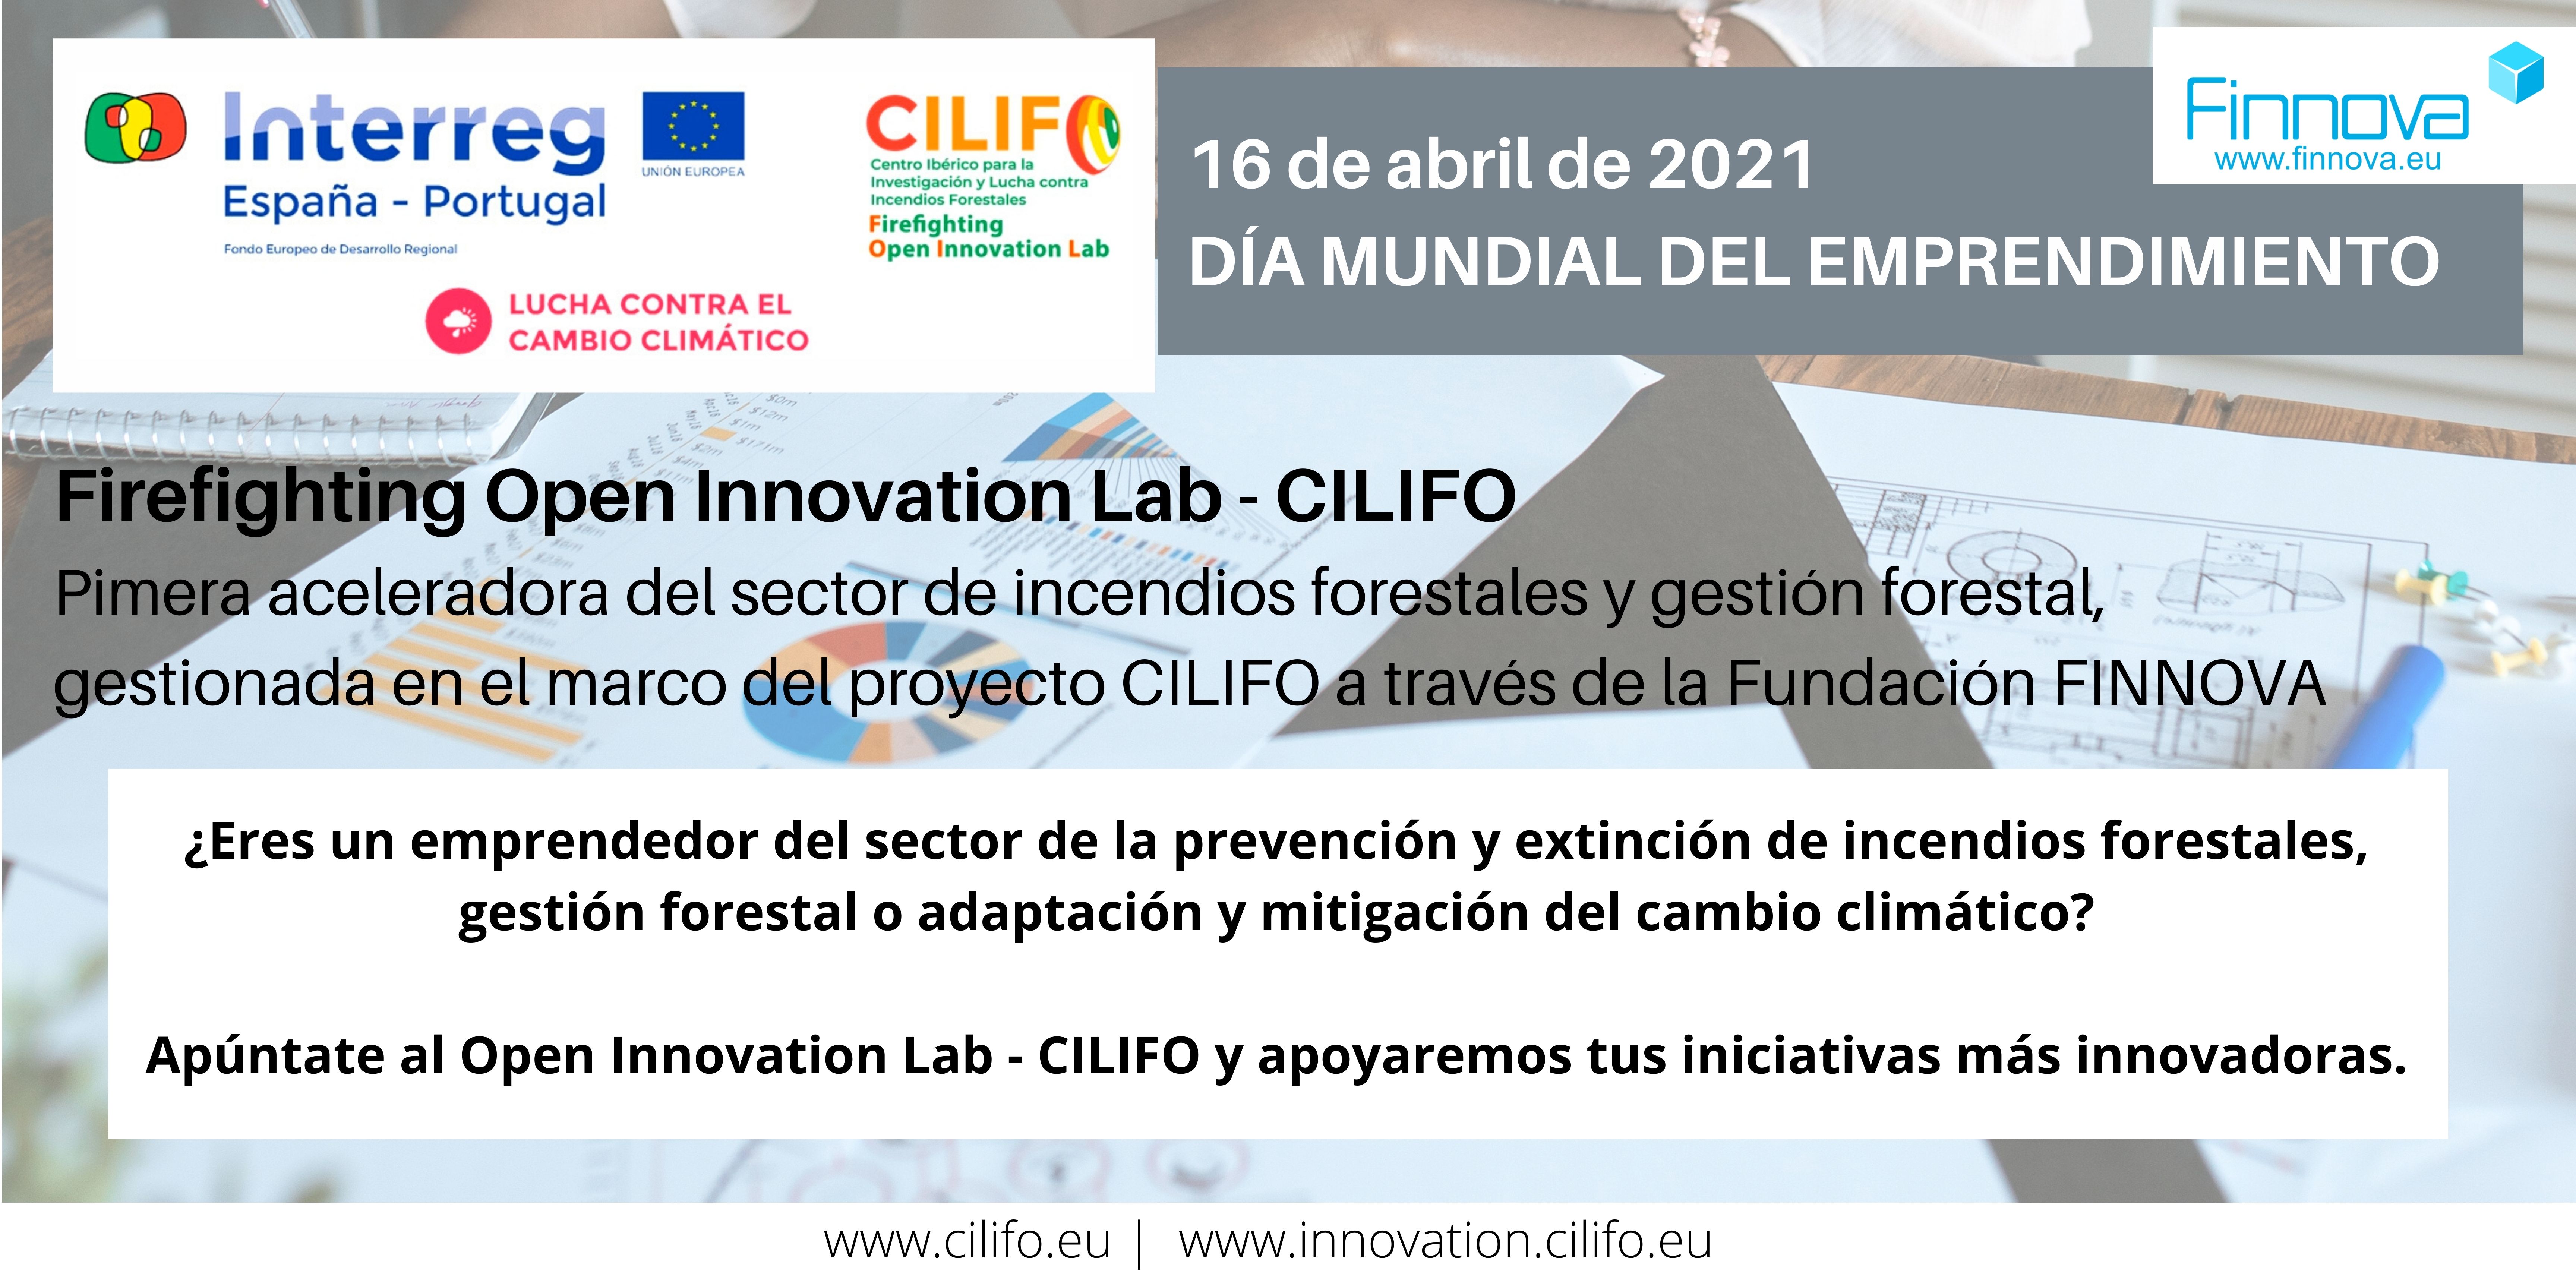 El Firefighting Open Innovation Lab - CILIFO se une a la celebración del Día Mundial del Emprendimiento